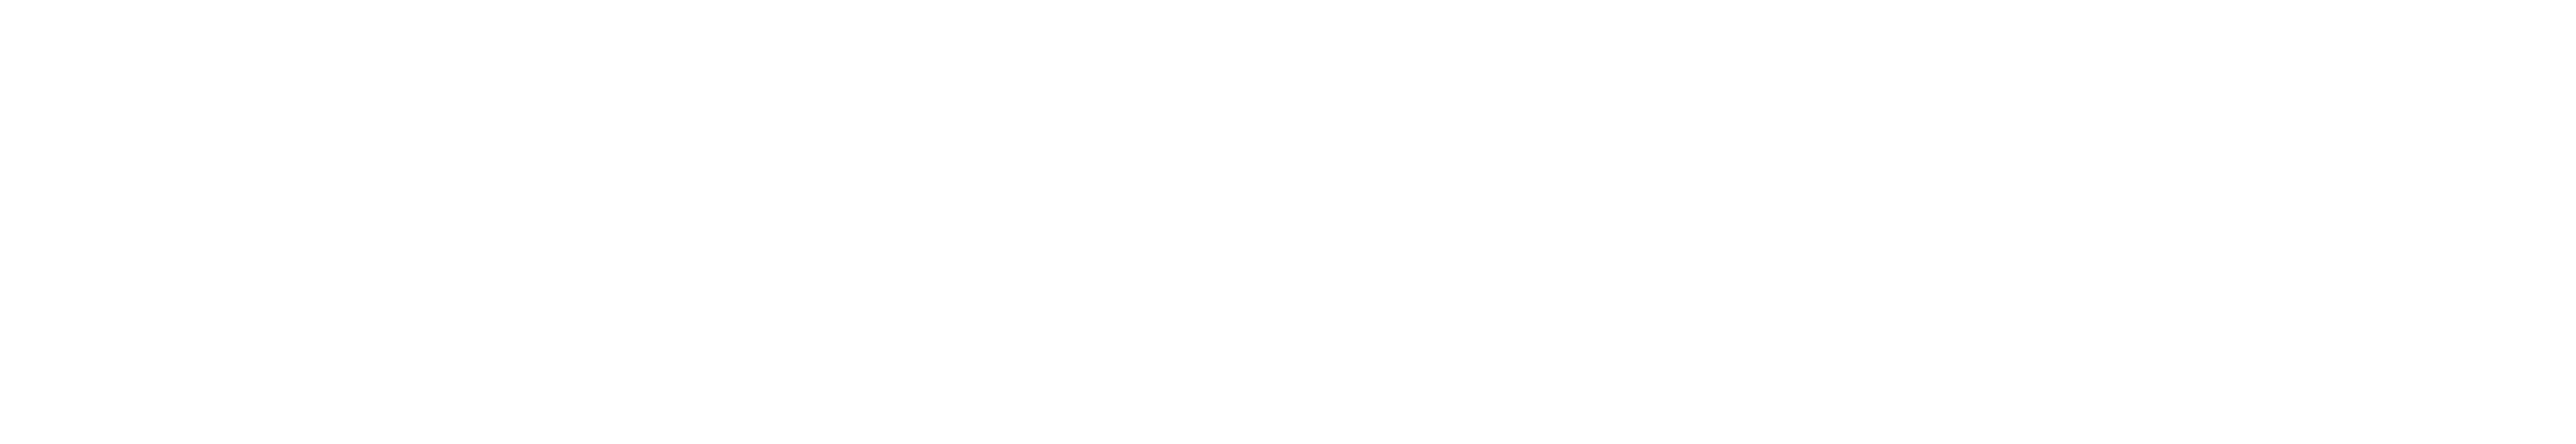 LinkFlix.fun -.- Revolucione Sua Experiência de Filmes e Séries! Compartilhe listas, descubra novidades, crie perfis personalizados.